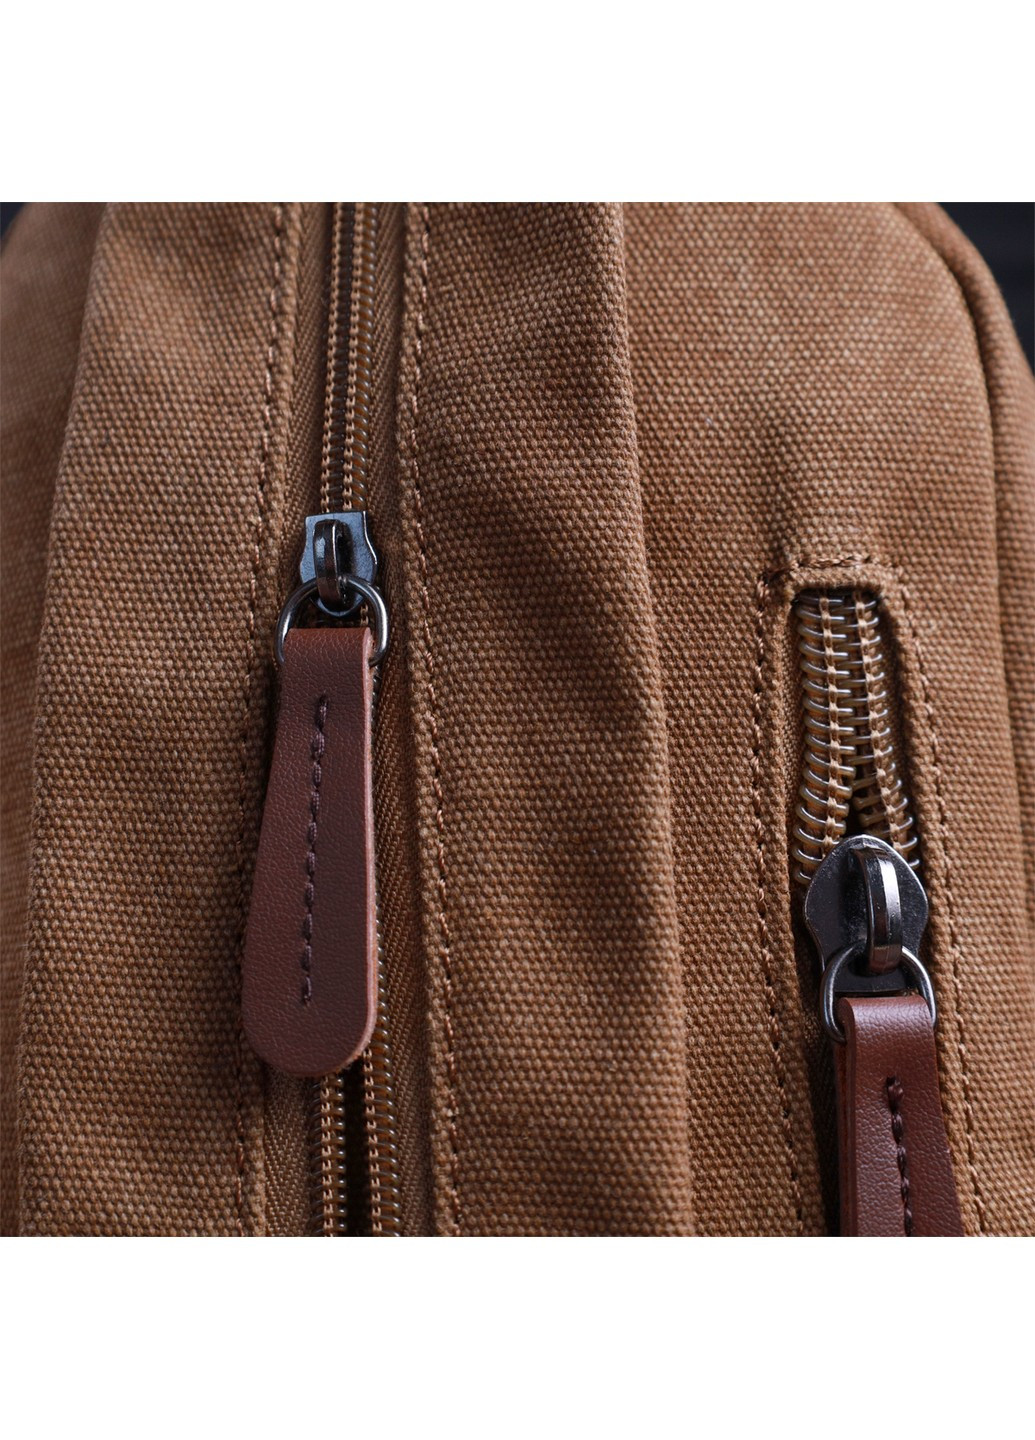 Оригинальная сумка для мужчин через плечо с уплотненной спинкой Vintagе 22177 Коричневый Vintage (267932173)